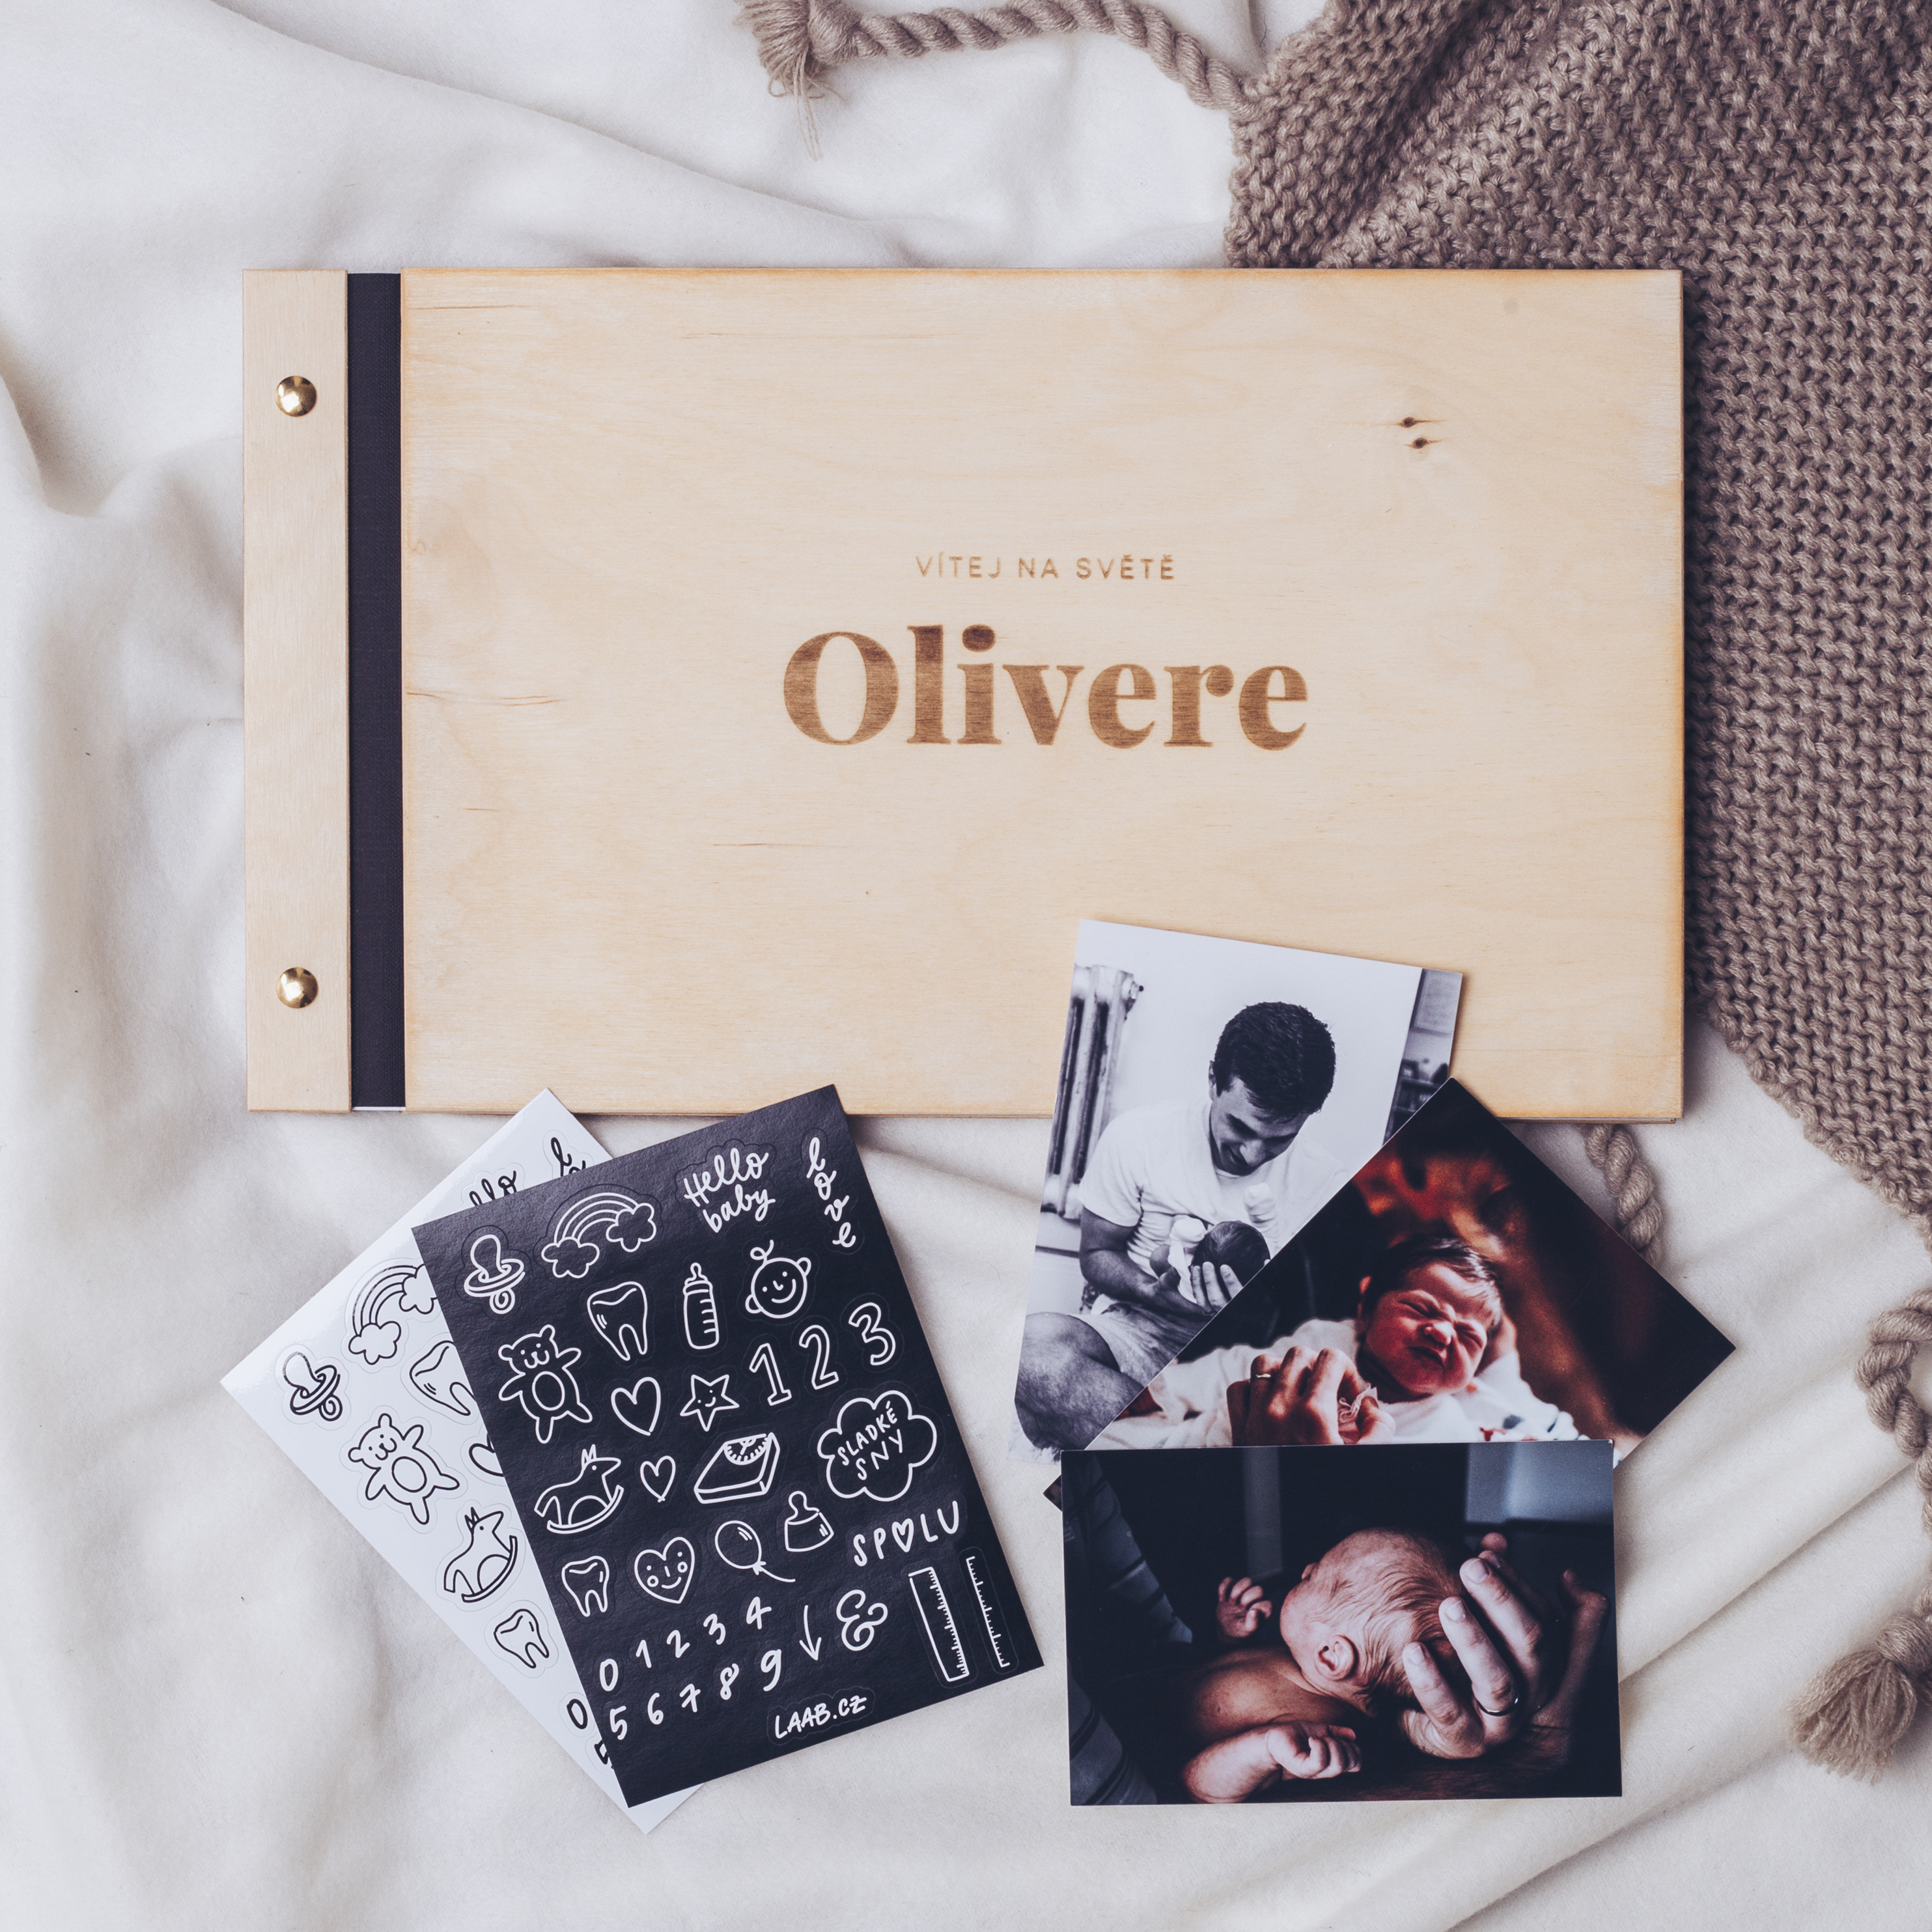 dřevěné fotoalbum Oliver: FORMÁT FOTOALBA na šířku, POČET LISTŮ 20, FORMÁT FOTOALBA na výšku, POČET LISTŮ 25 s prokladovými listy, BARVA LISTŮ bílá